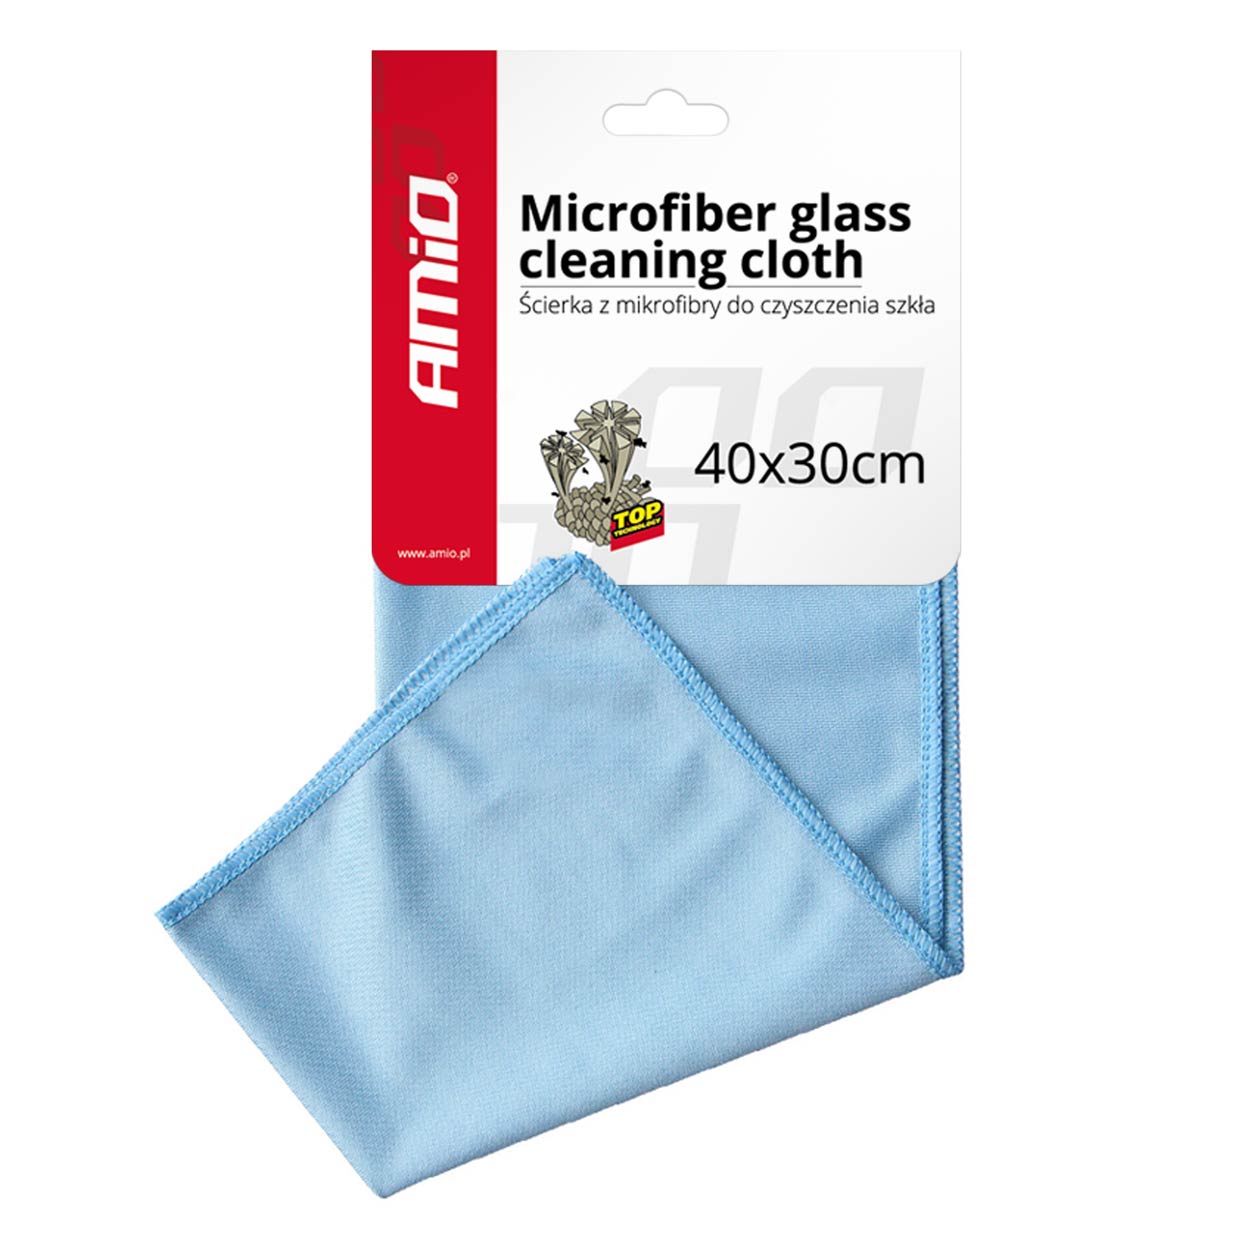 Mikrofaser-Reinigungstuch für Glas – spo-cs-disabled – spo-default – spo-disabled – spo-notify-me-disabled